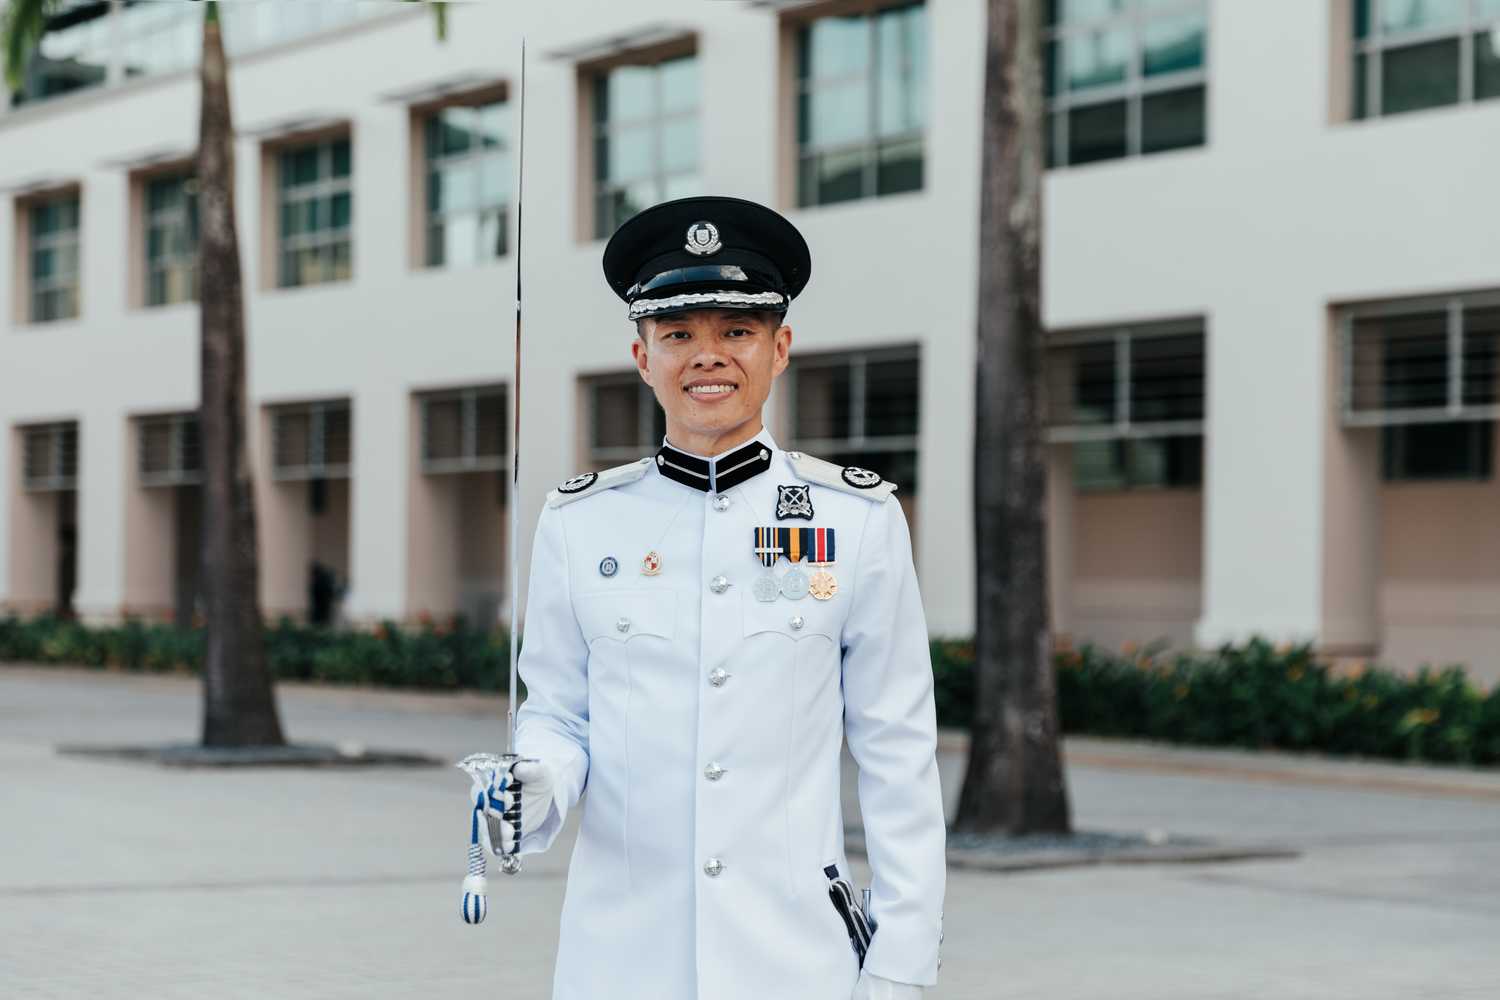 Parade Commander in ceremonial uniform 